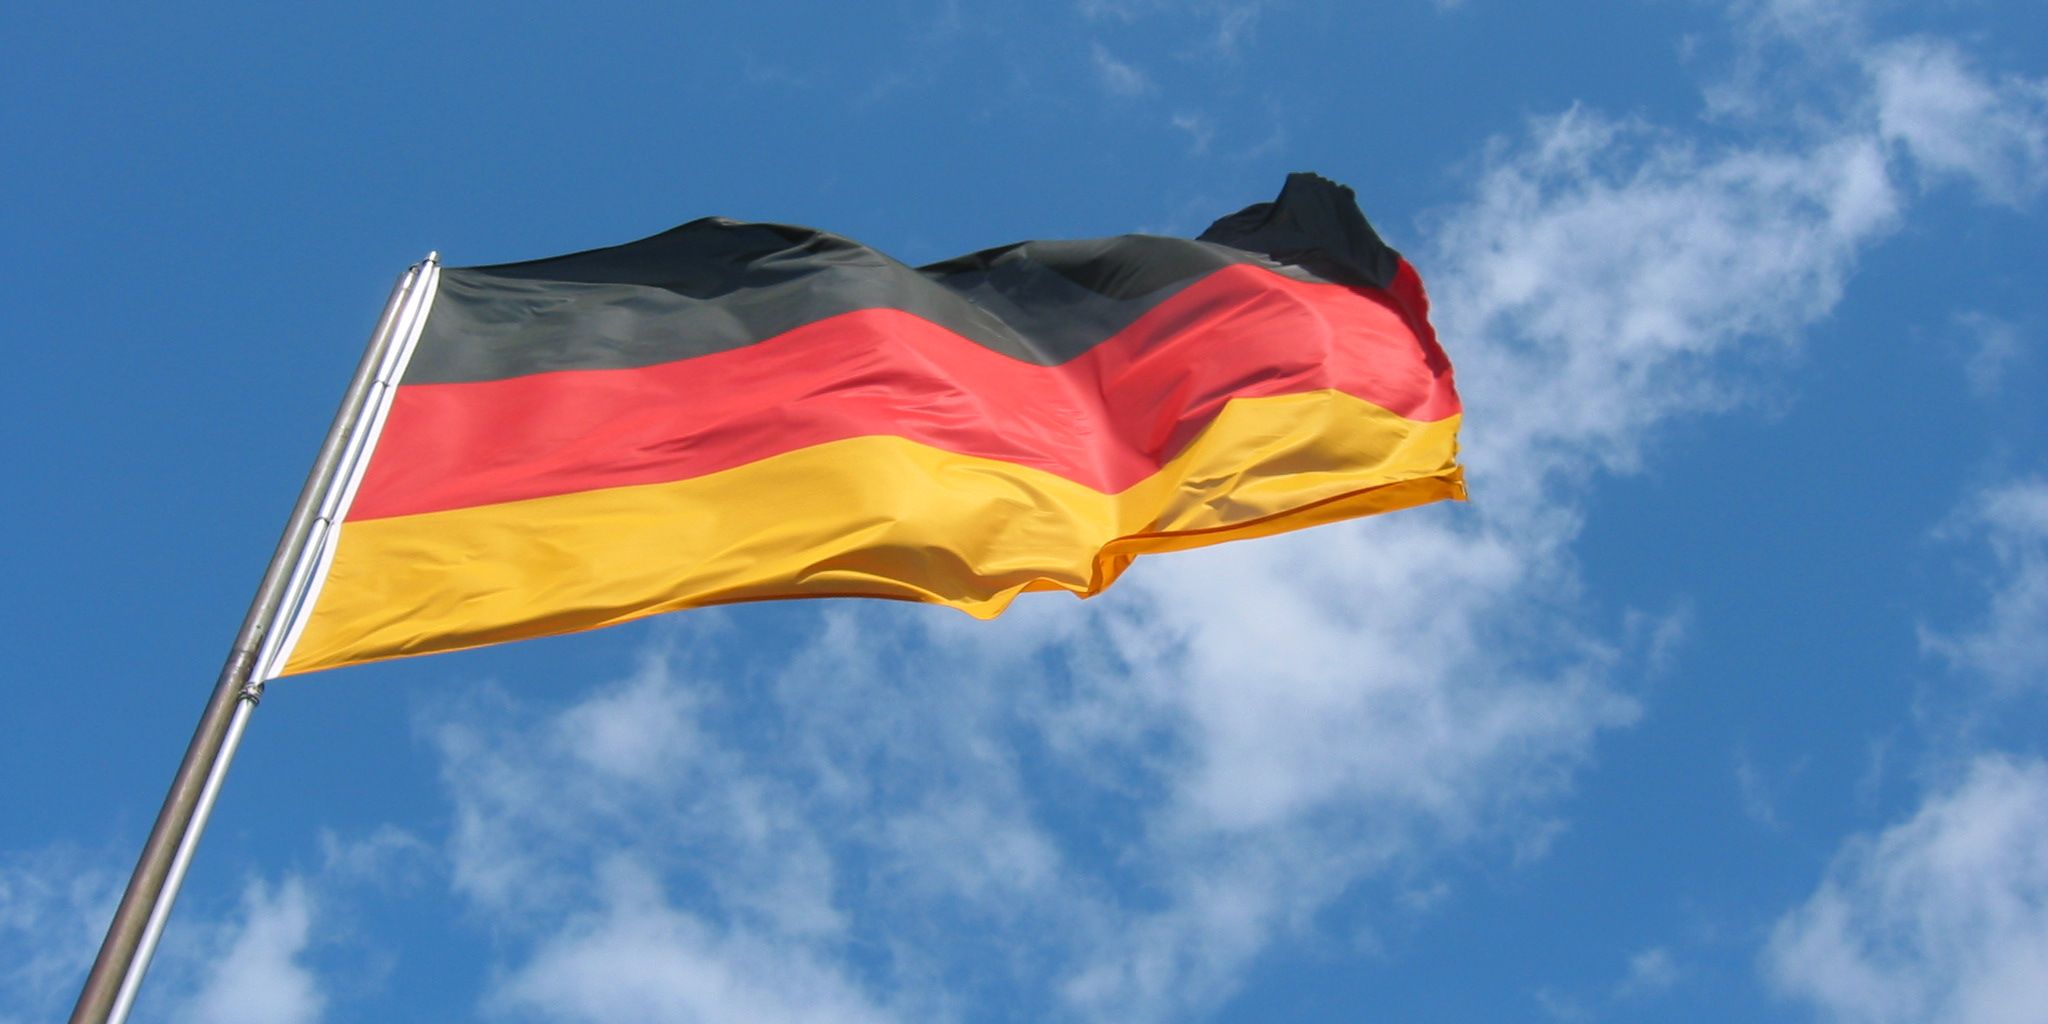 Χανιά: Εθνοφύλακες έπιασαν τους ΝΑΤΟϊκούς που ύψωσαν τη γερμανική σημαία – Ήταν οργανωμένο σχέδιο! (φωτό)